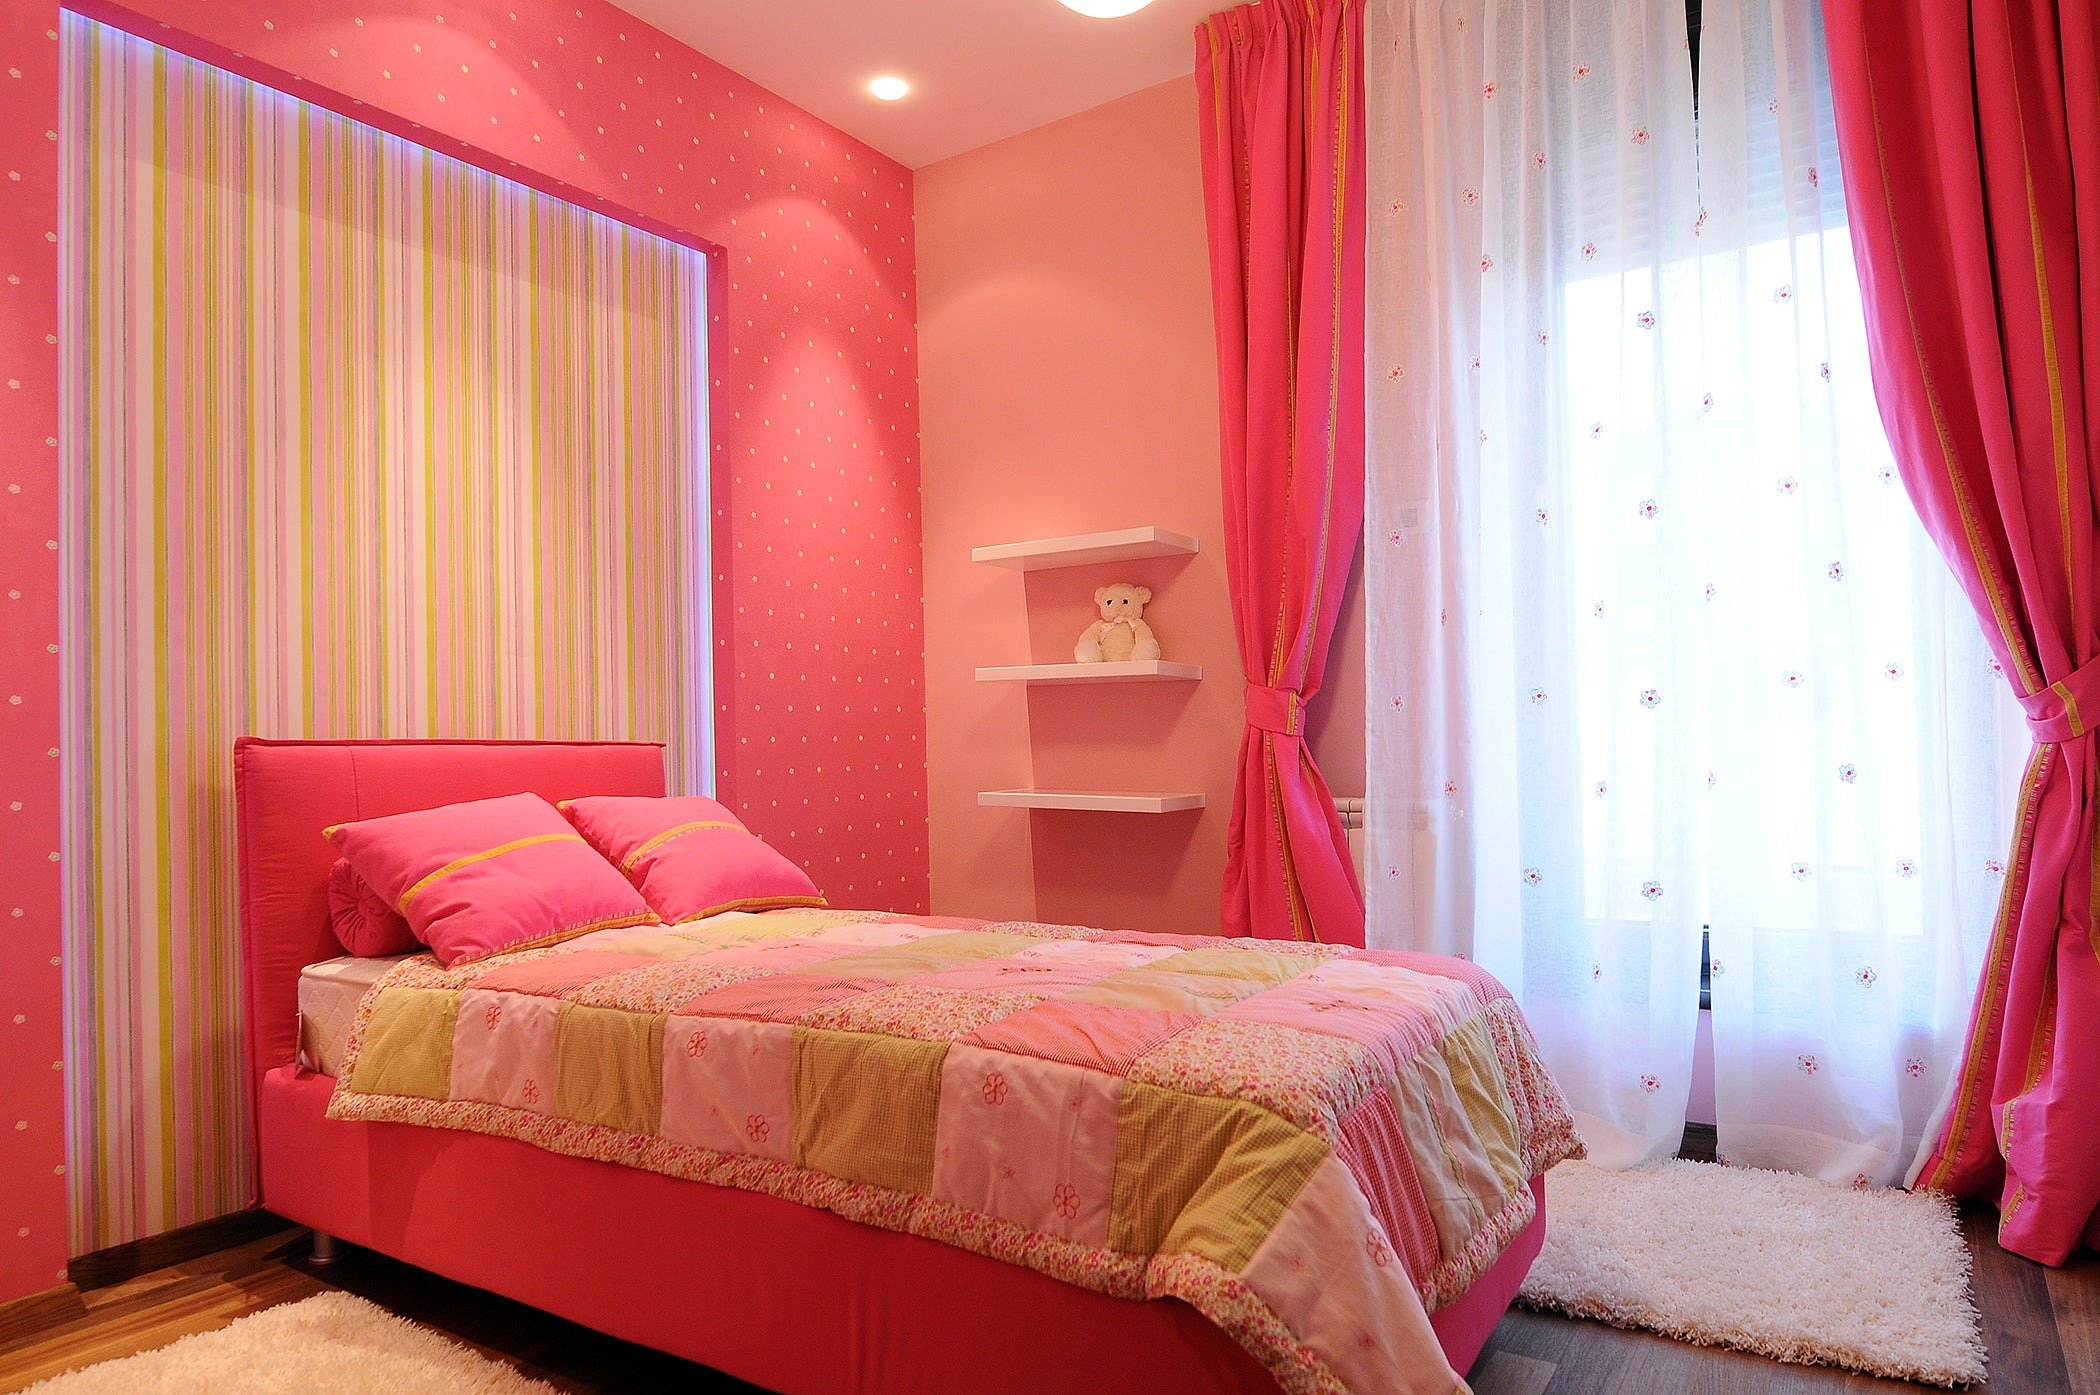 Спальня в розовых тонах. Розовая спальня. Розовые стены в спальне. Шторы в спальню в розовых тонах.